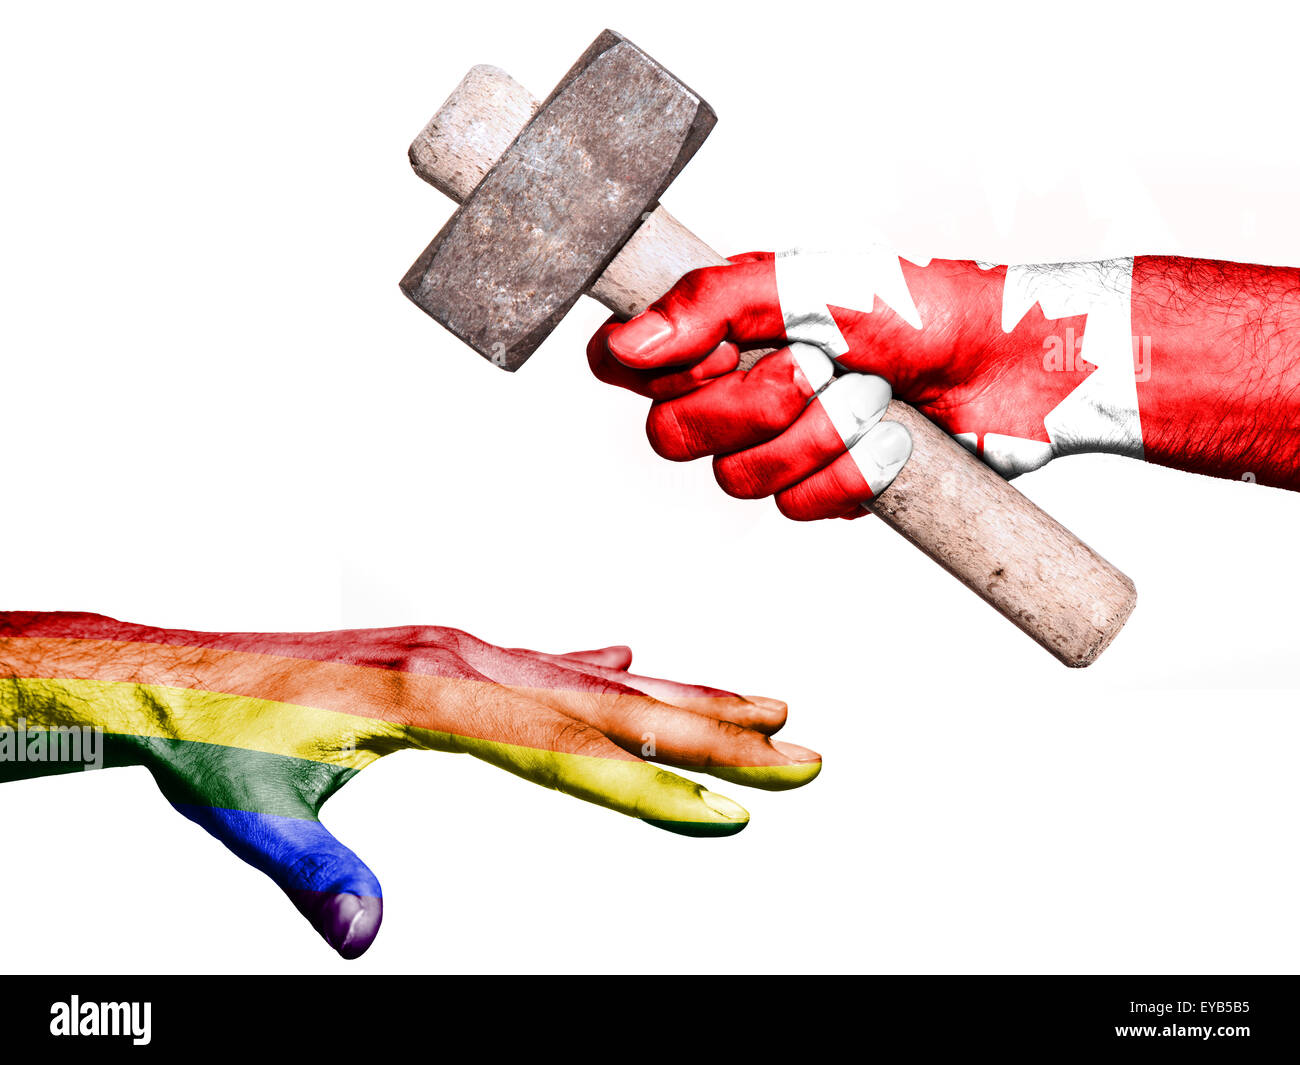 Pabellón de Canadá marcadas en una mano que sostiene un martillo pesado golpea una mano que representa la paz. Imagen conceptual de politica Foto de stock